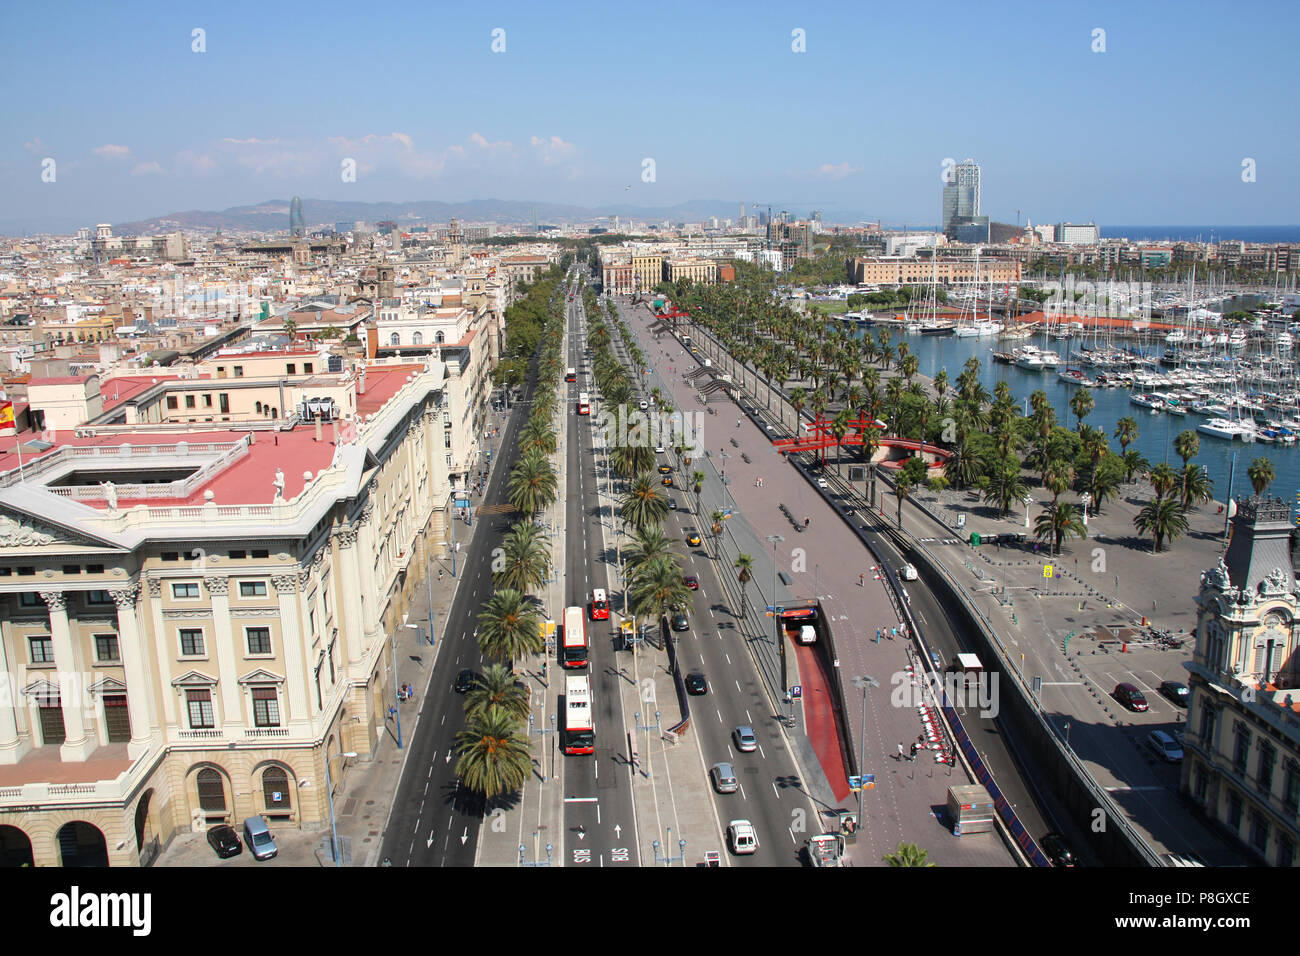 La ville de Barcelone. Vue aérienne de Port Vell, marina et quartier de Barceloneta. Banque D'Images